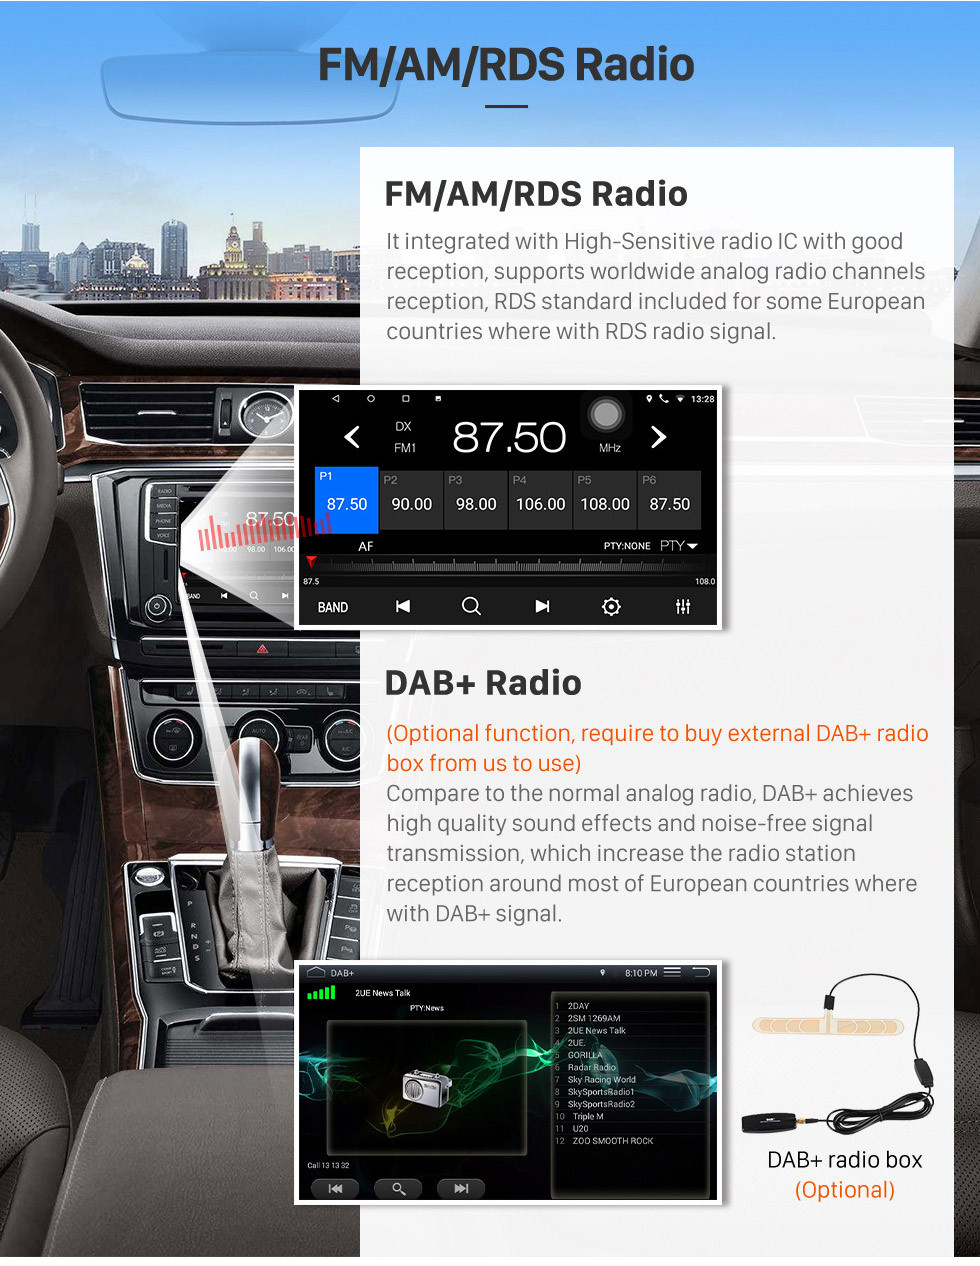 Seicane 9 polegada Android 10.0 GPS Rádio de Navegação para 2012-2017 Renault Kwid com Bluetooth USB HD Touchscreen suporte Carplay DVR OBD